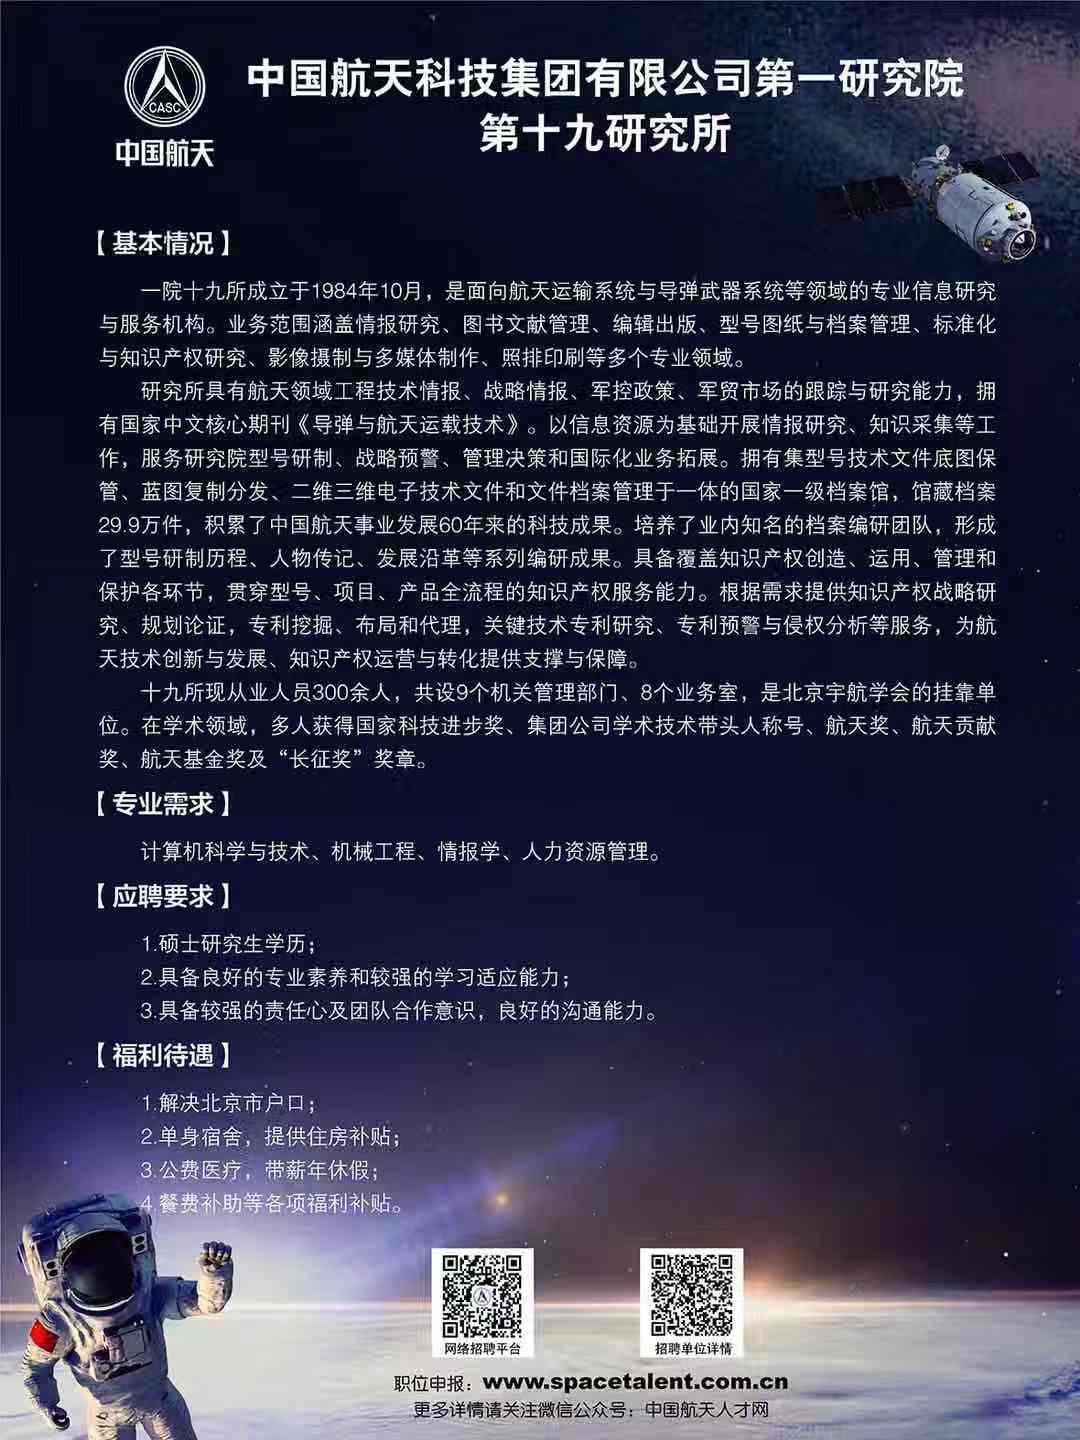 中国航天科技集团有限公司第一研究院第十九所研究所.JPG